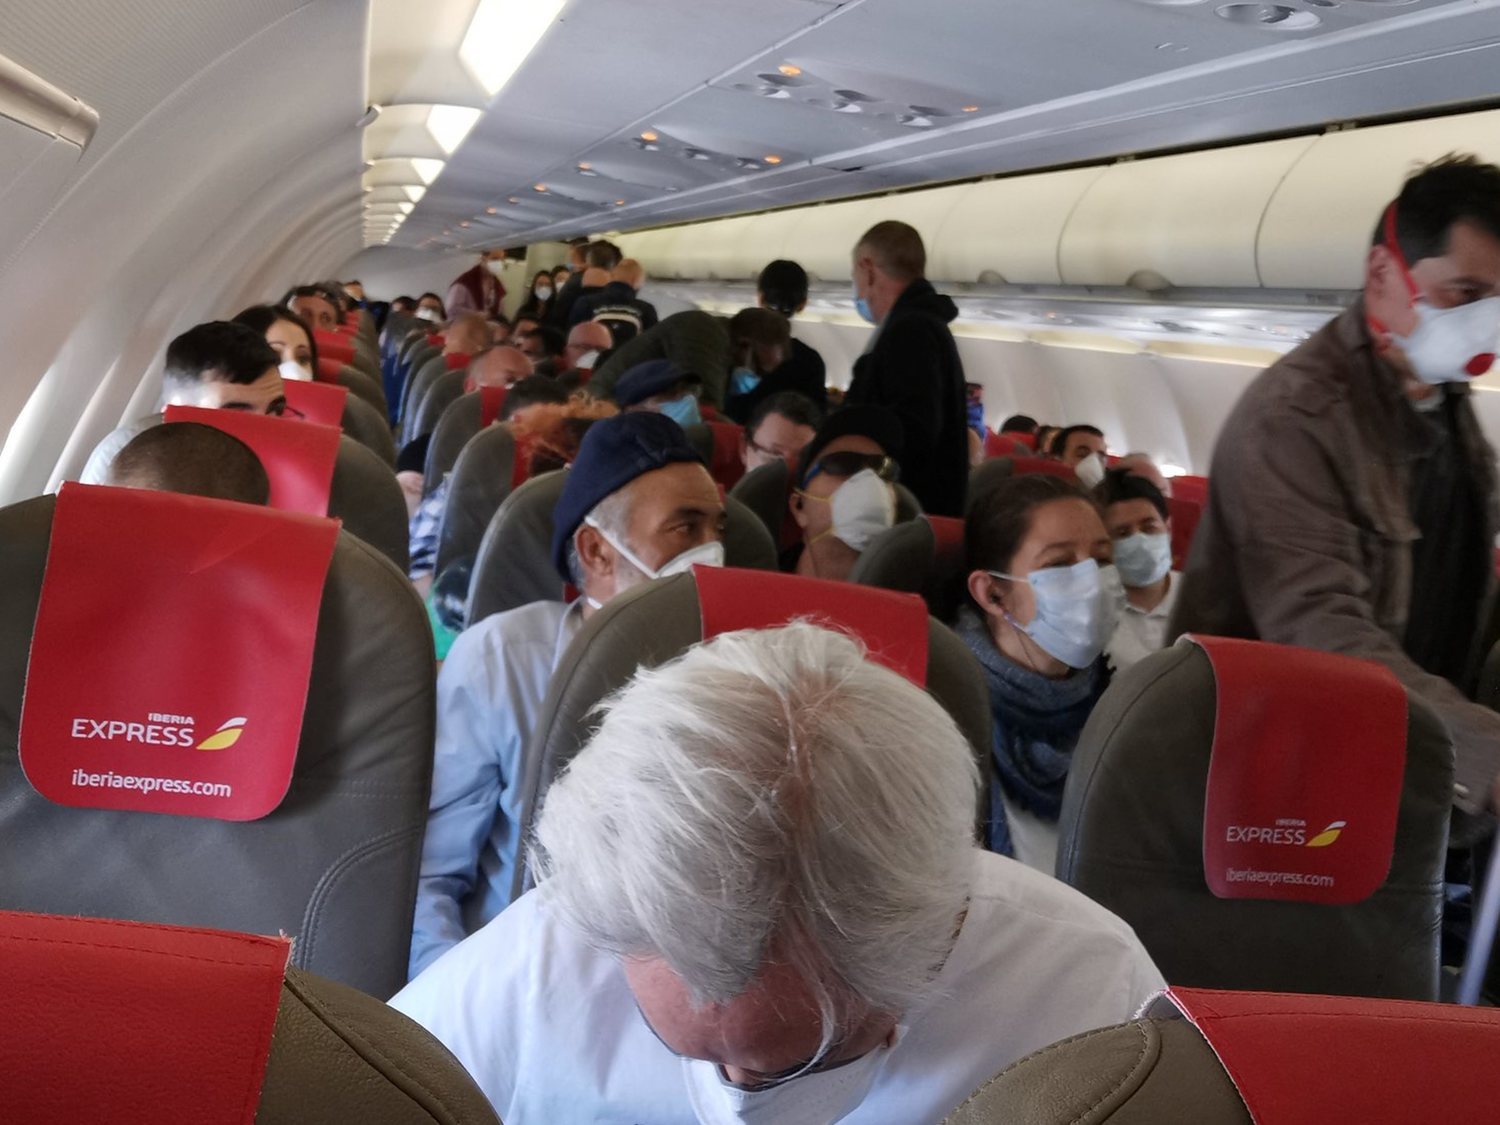 Indignación en un vuelo Madrid-Gran Canaria por la concentración del pasaje en plena pandemia